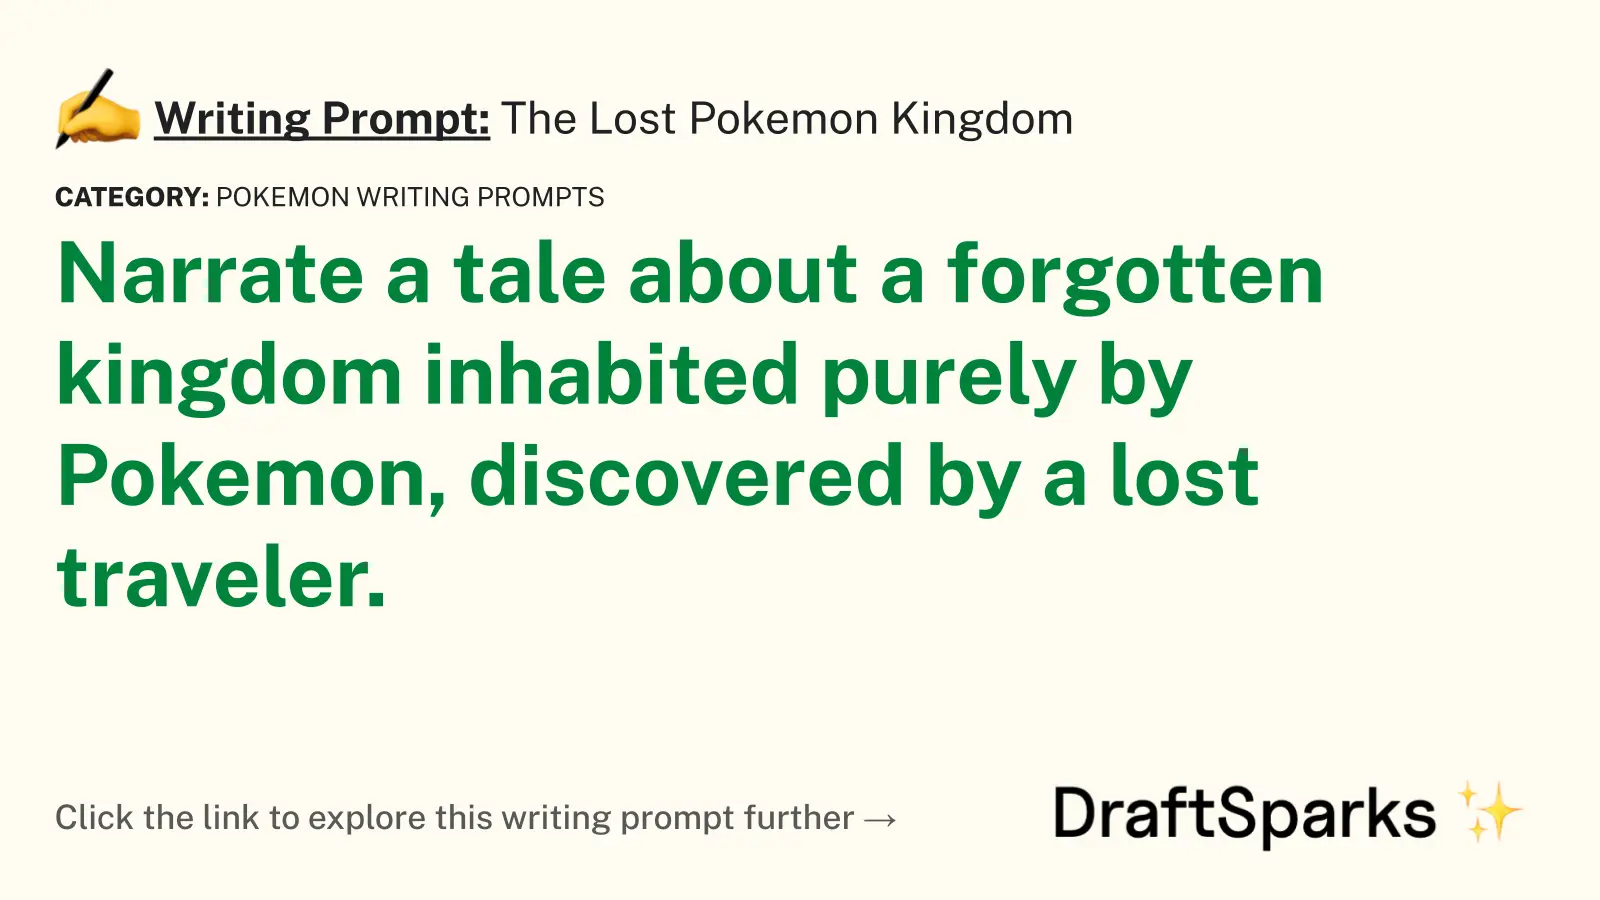 The Lost Pokemon Kingdom